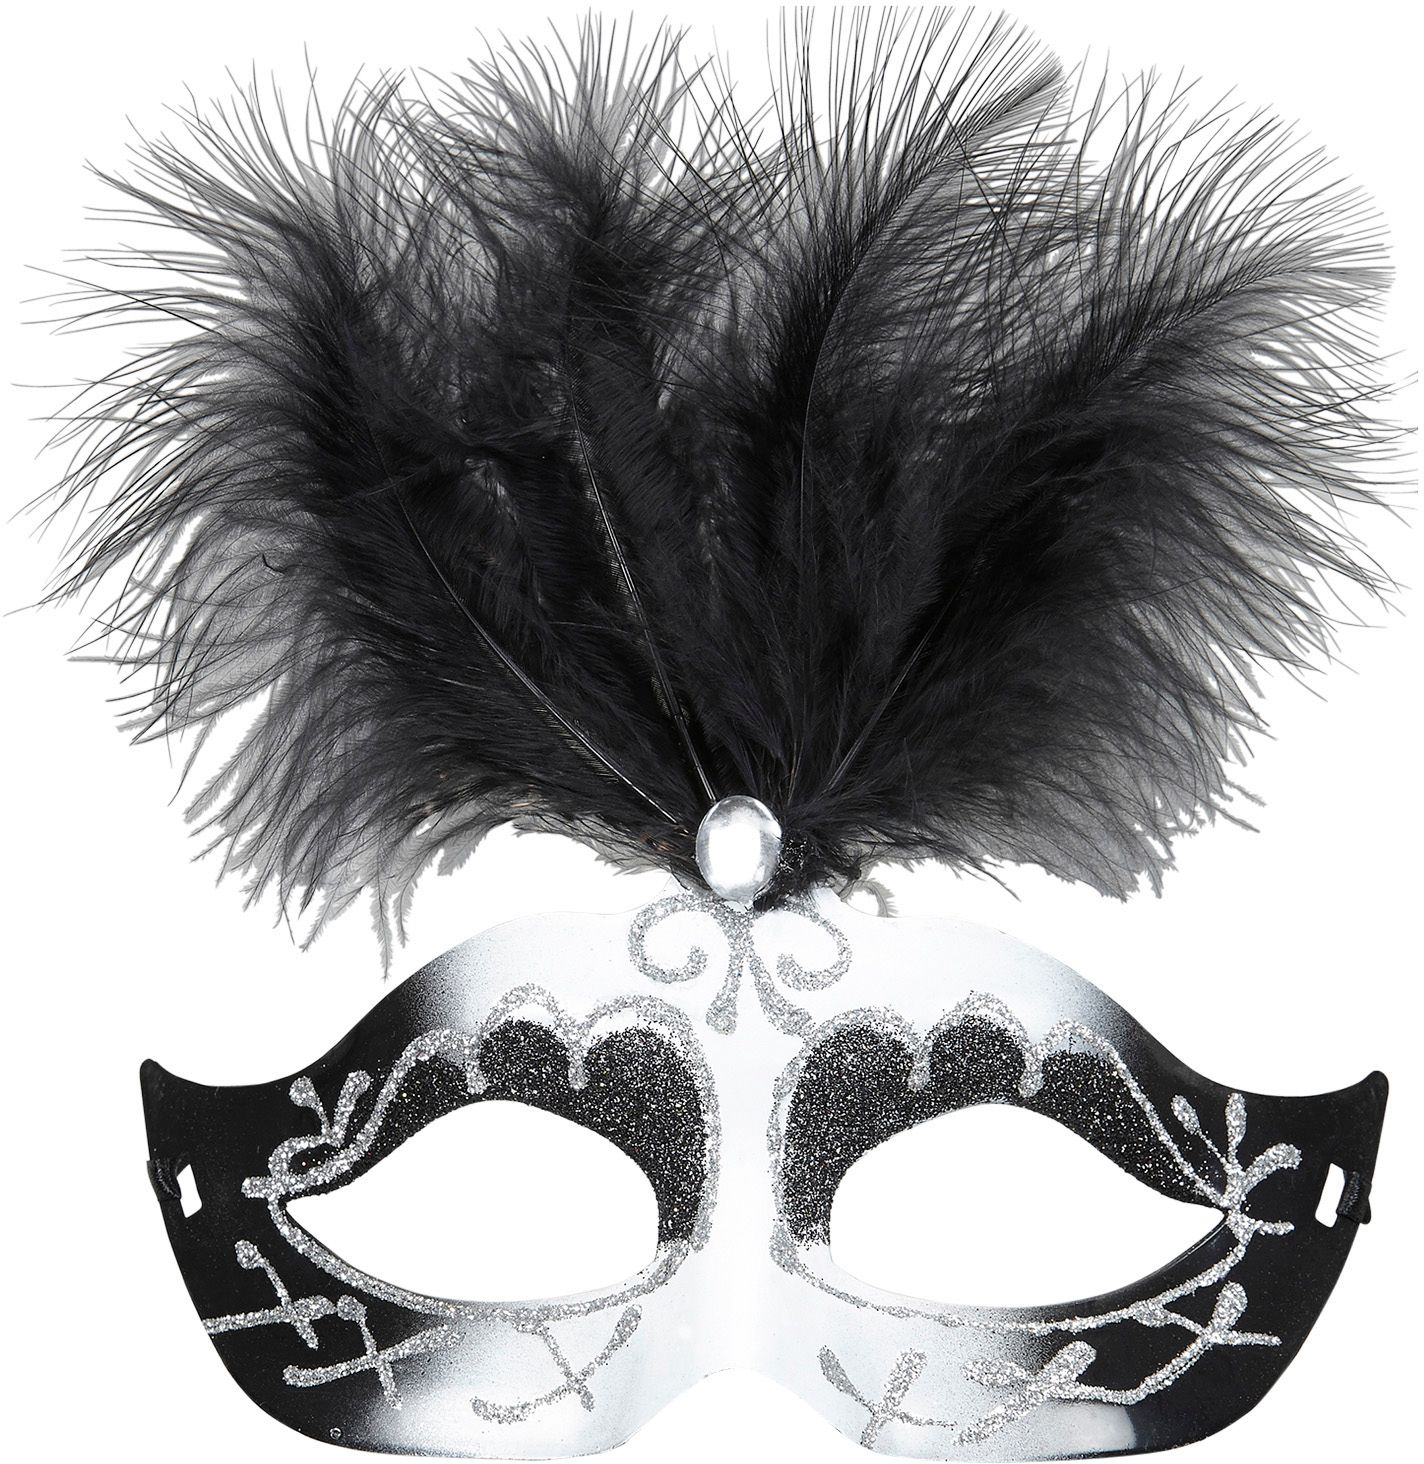 Zwart wit venetiaans oogmasker met veren